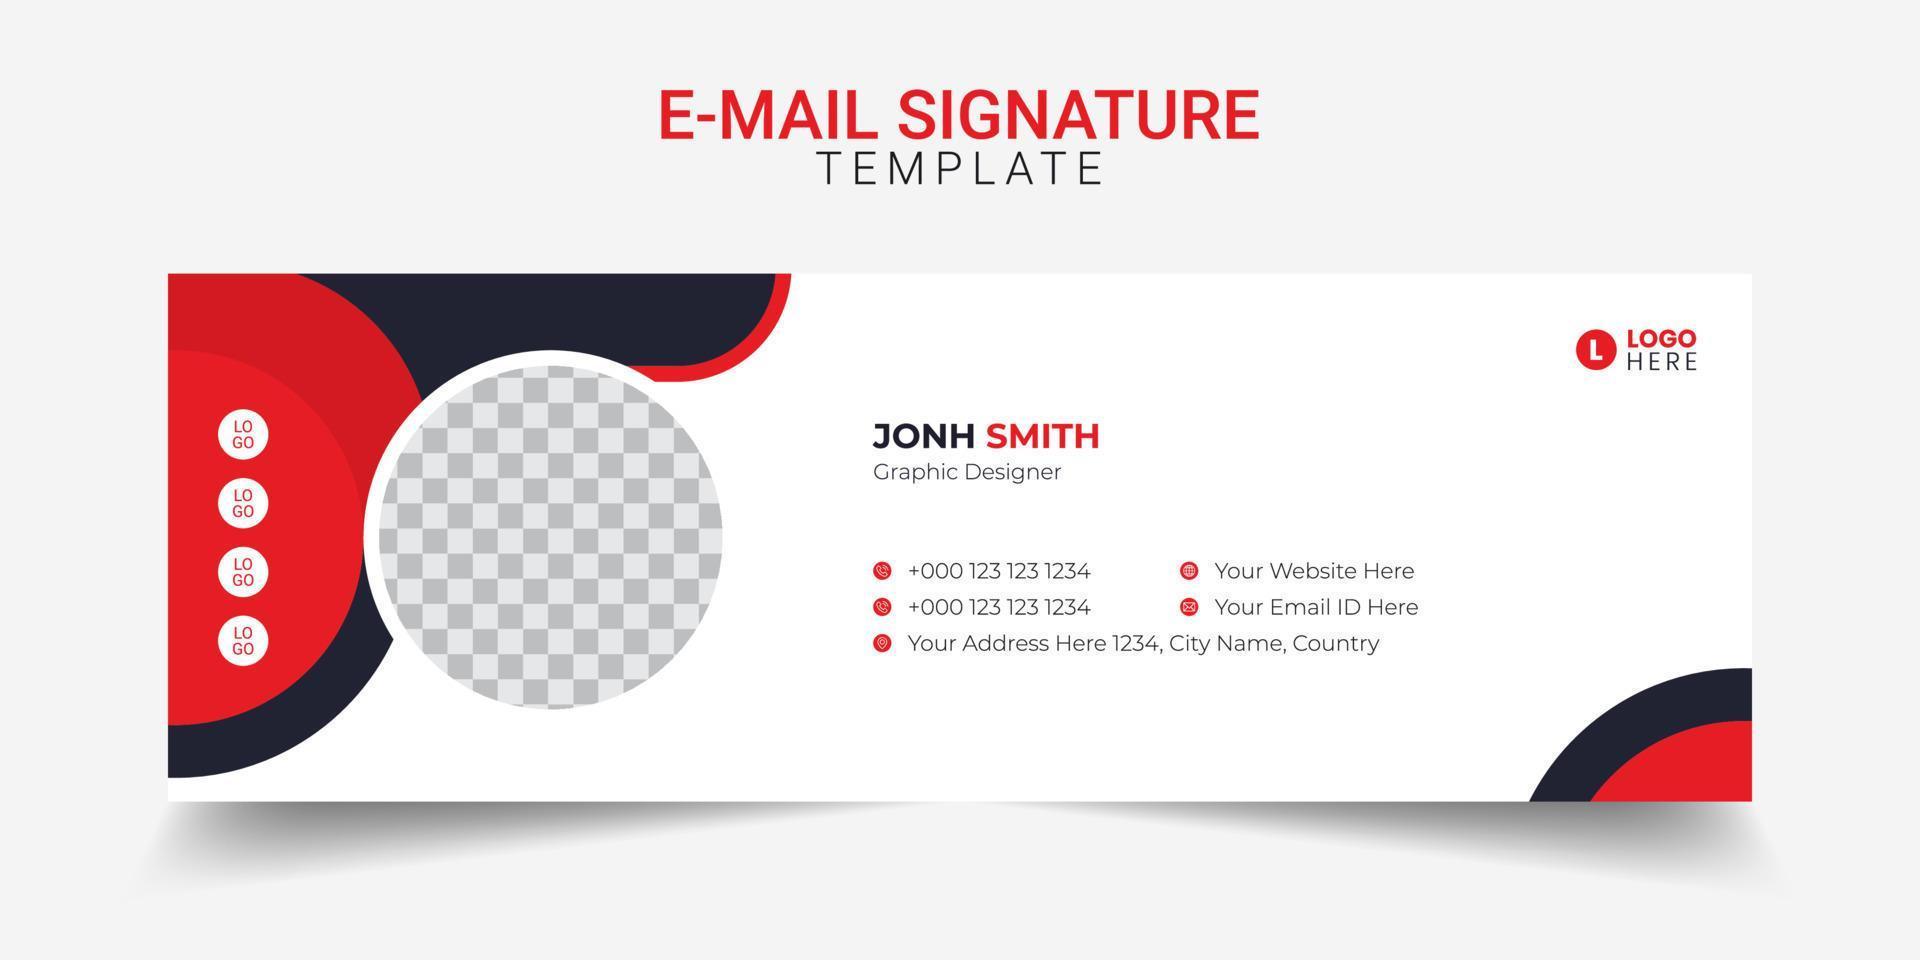 Diseño de plantilla de pie de página moderno de firma de correo electrónico creativo. vector